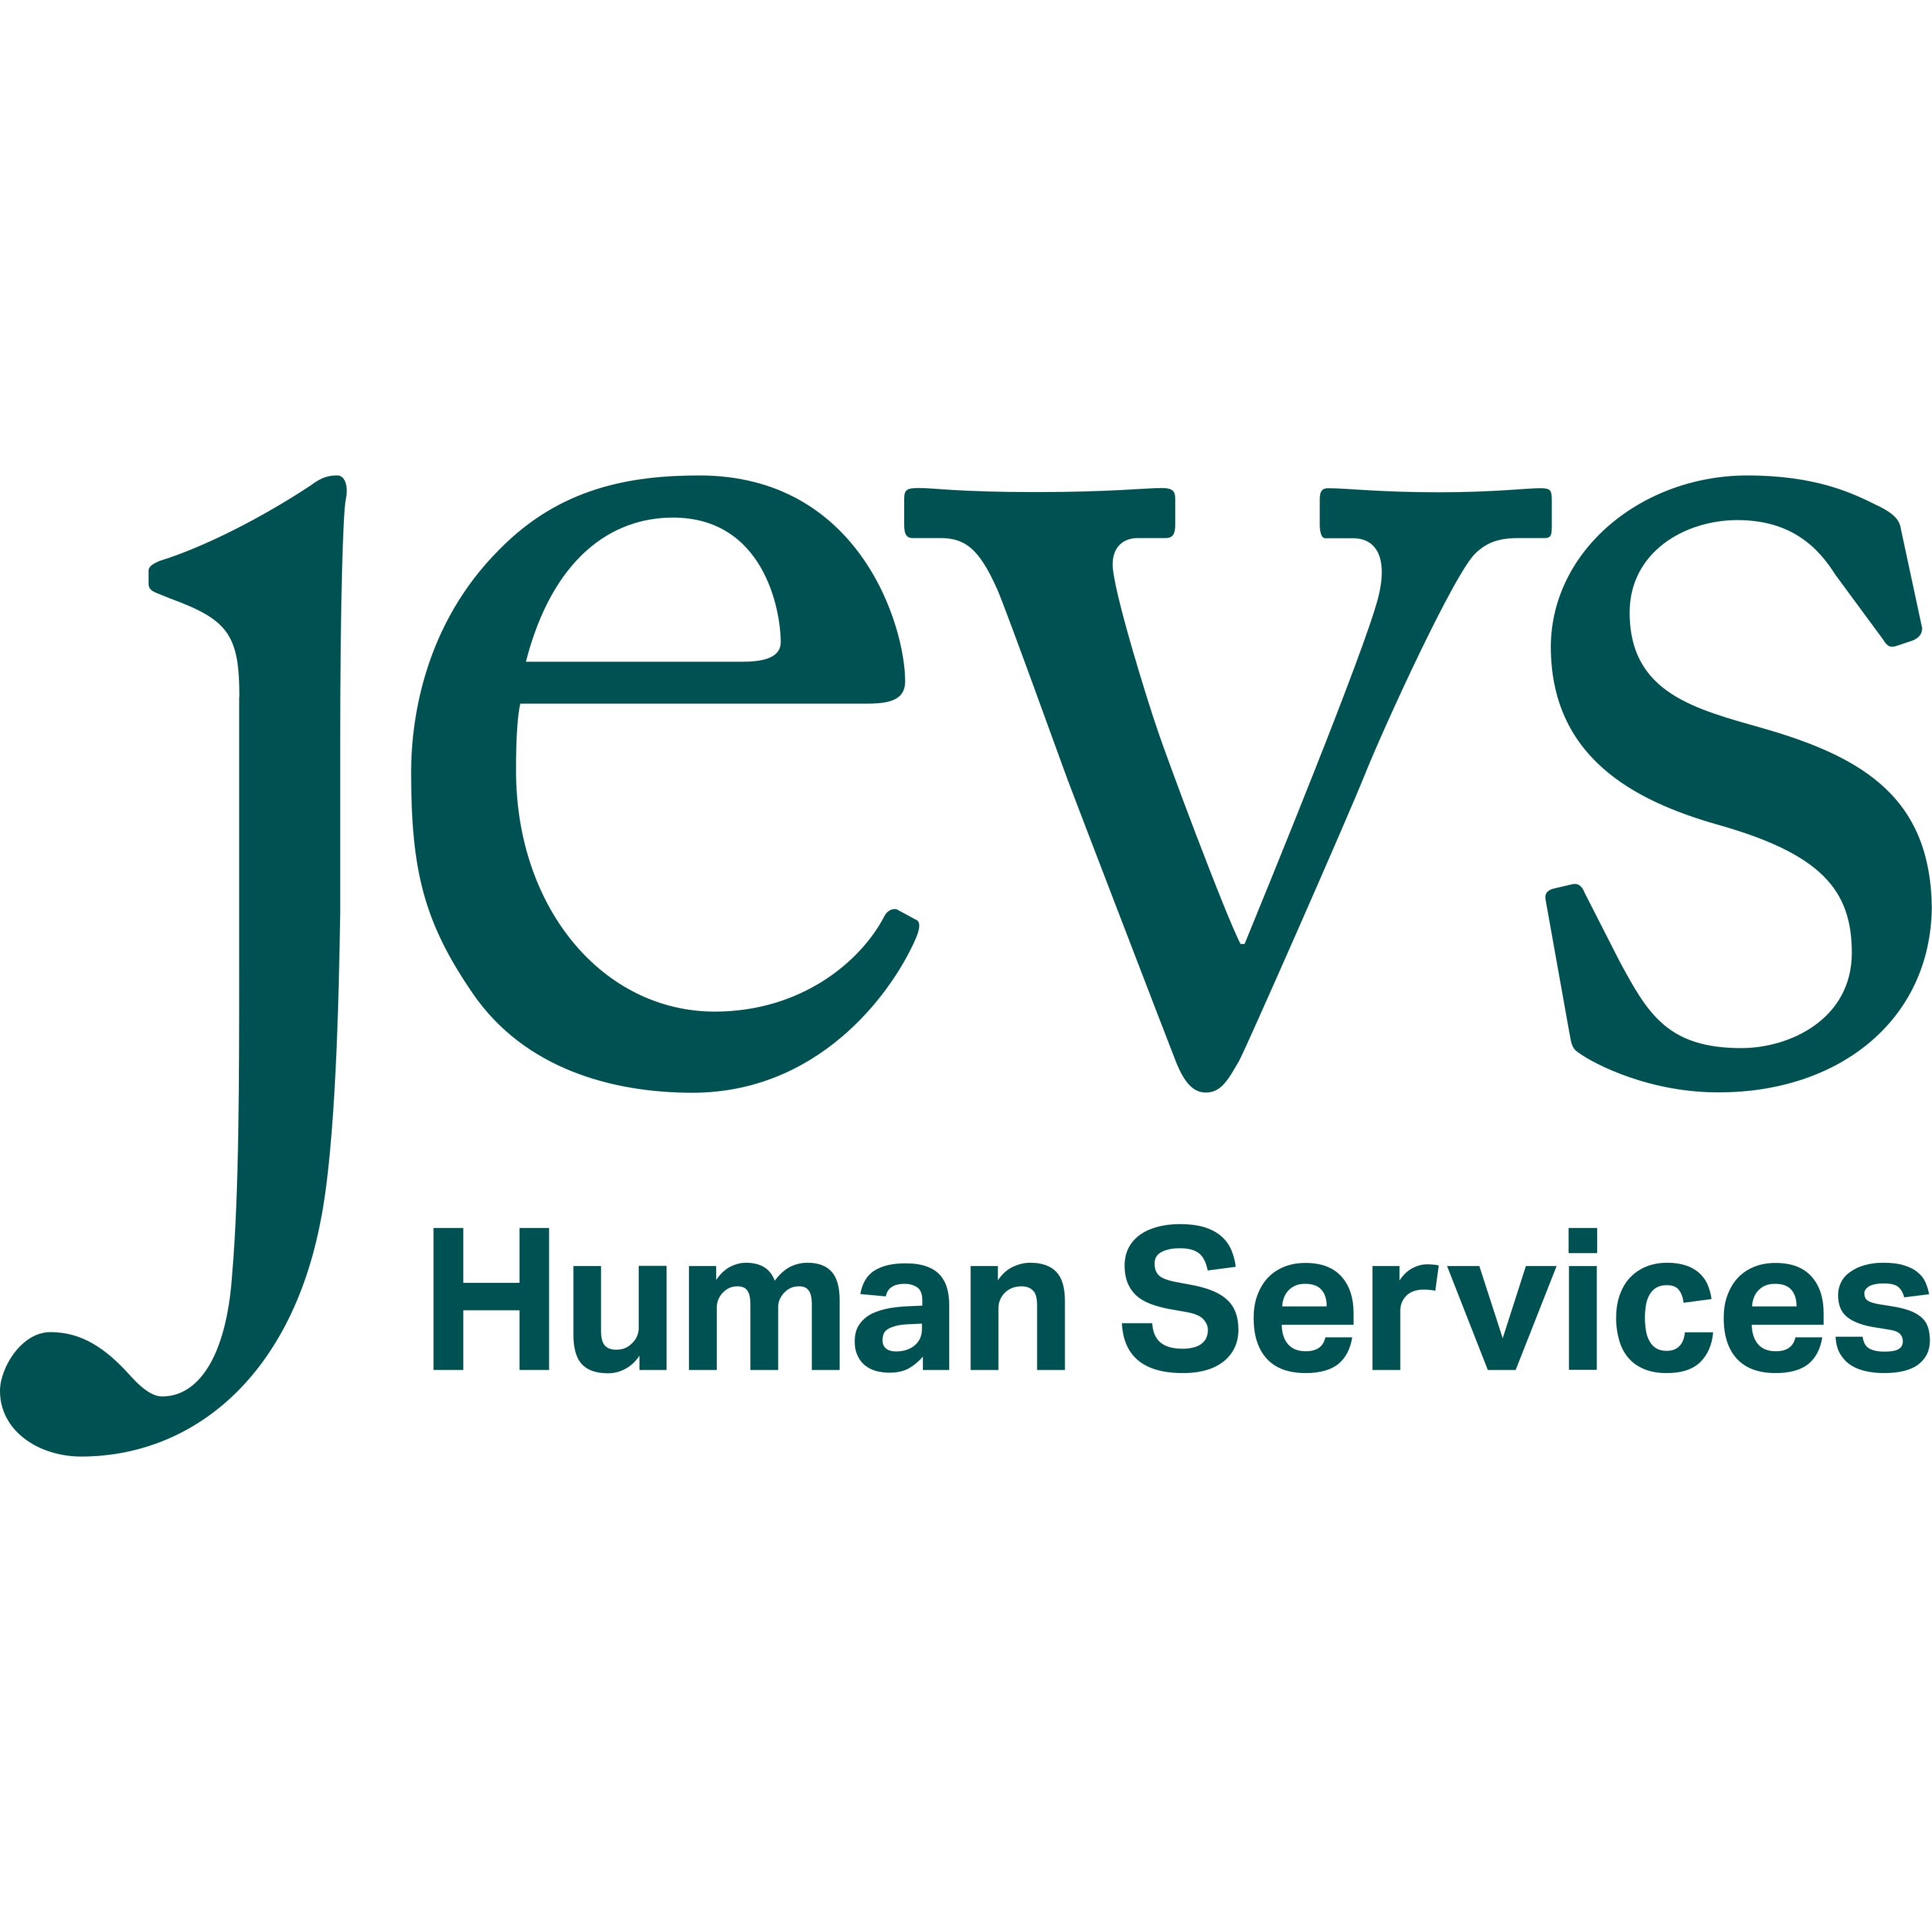 Jevs Human Services Logo  Transparent Clipart